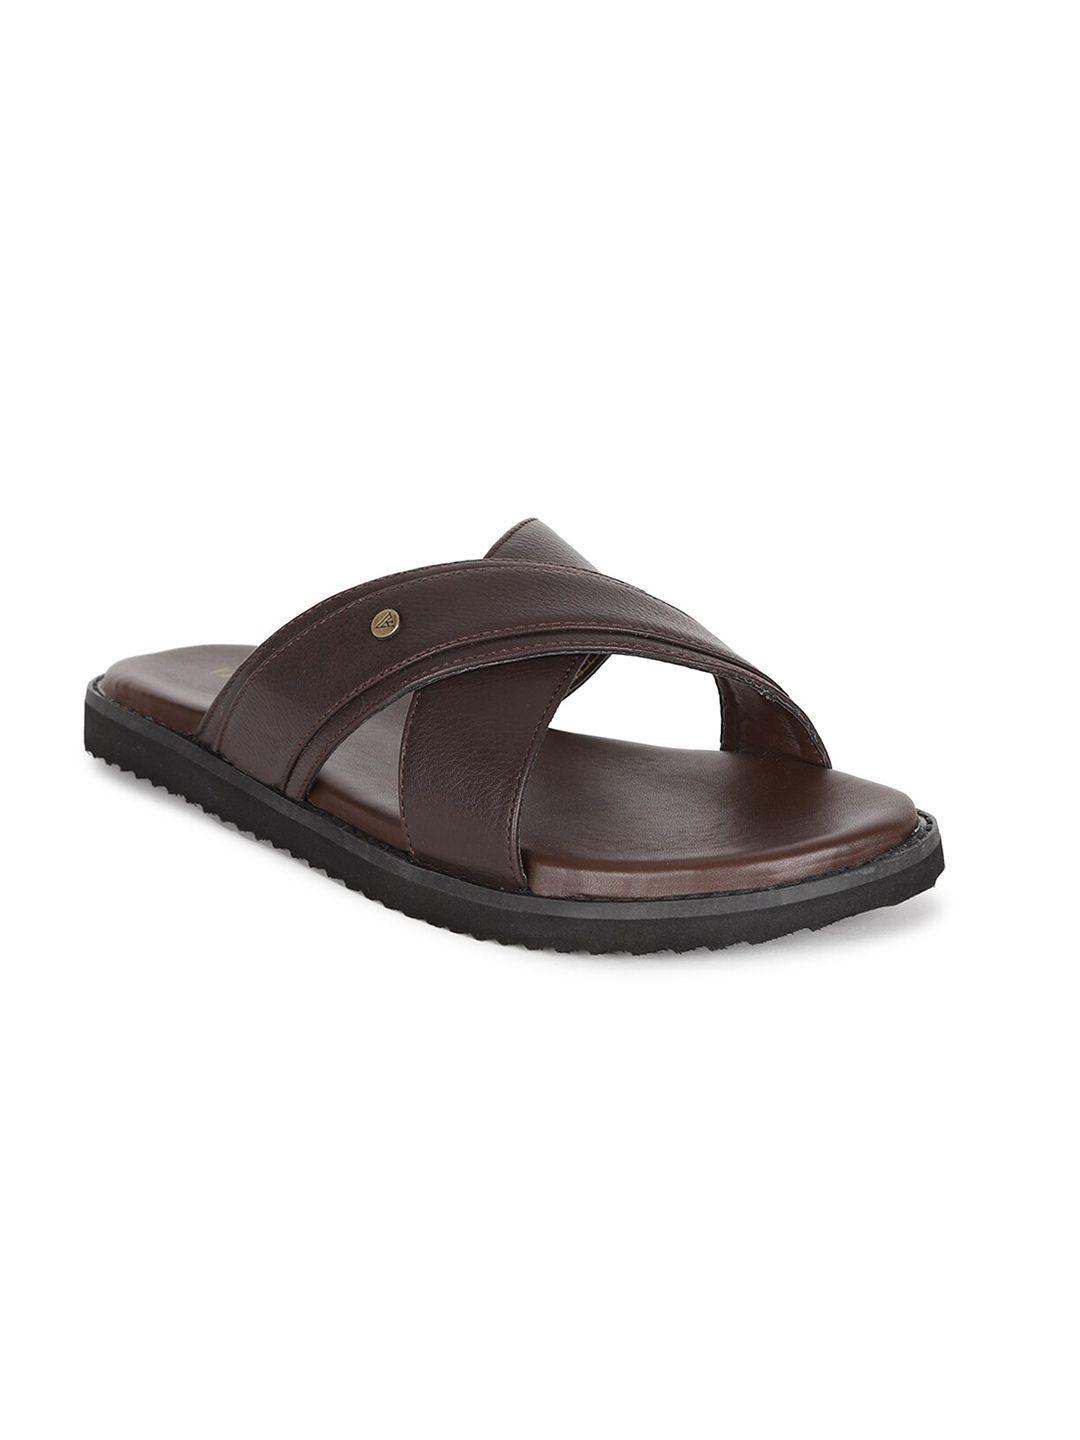 van heusen men coffee brown leather comfort sandals